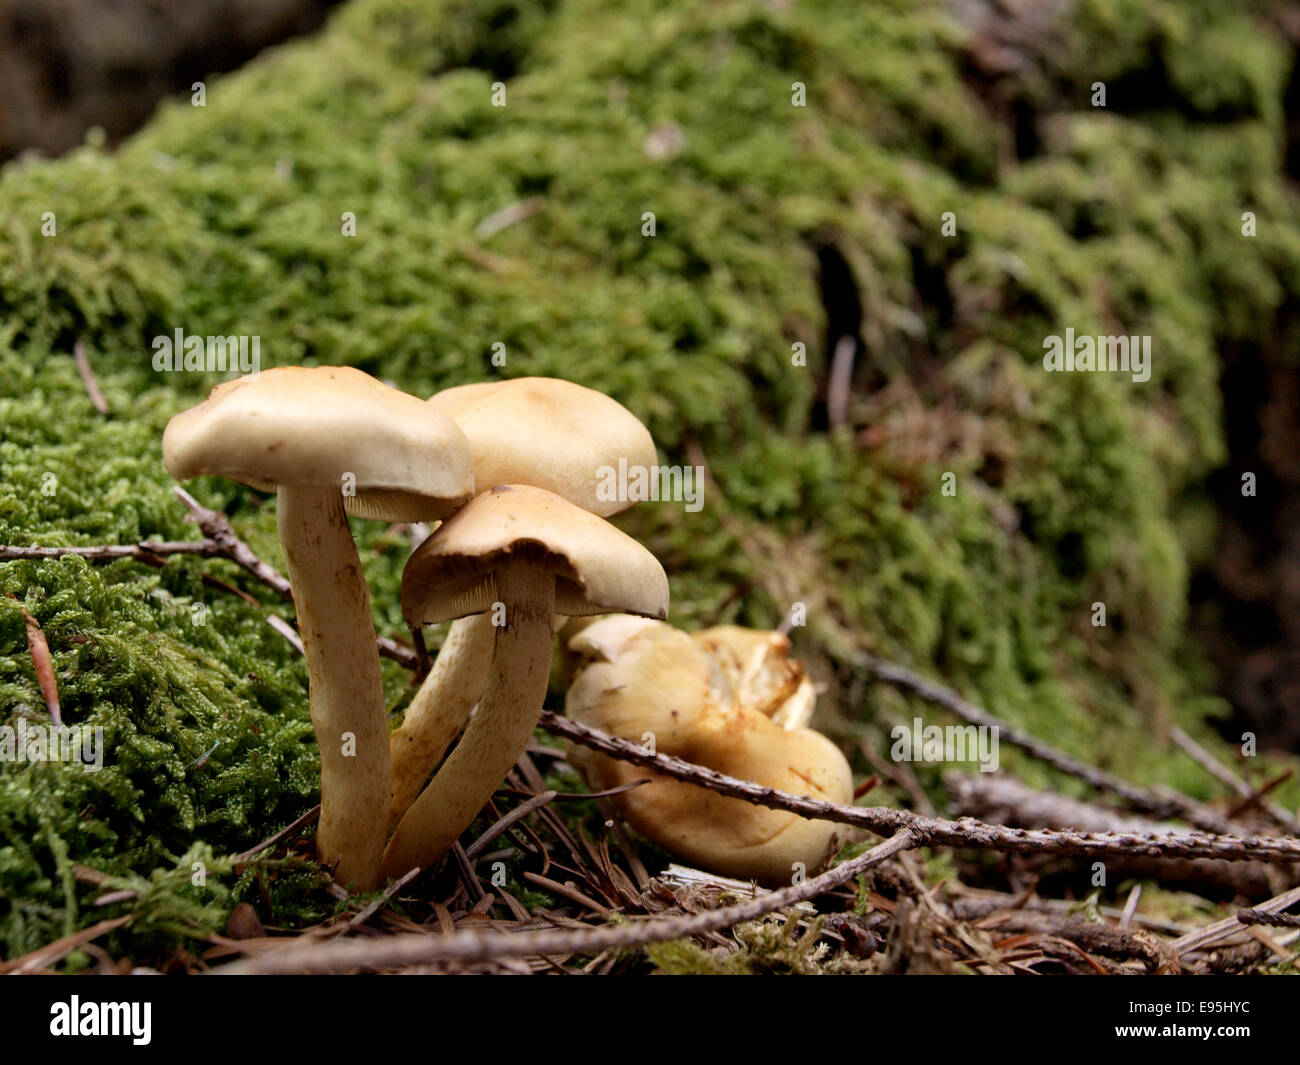 Pilze wachsen auf einem faulenden Baumstamm, ein Vertreter der Gattung Pholiota, Holz Fäulnis Saprobes Pilze, Dorset, Großbritannien Stockfoto